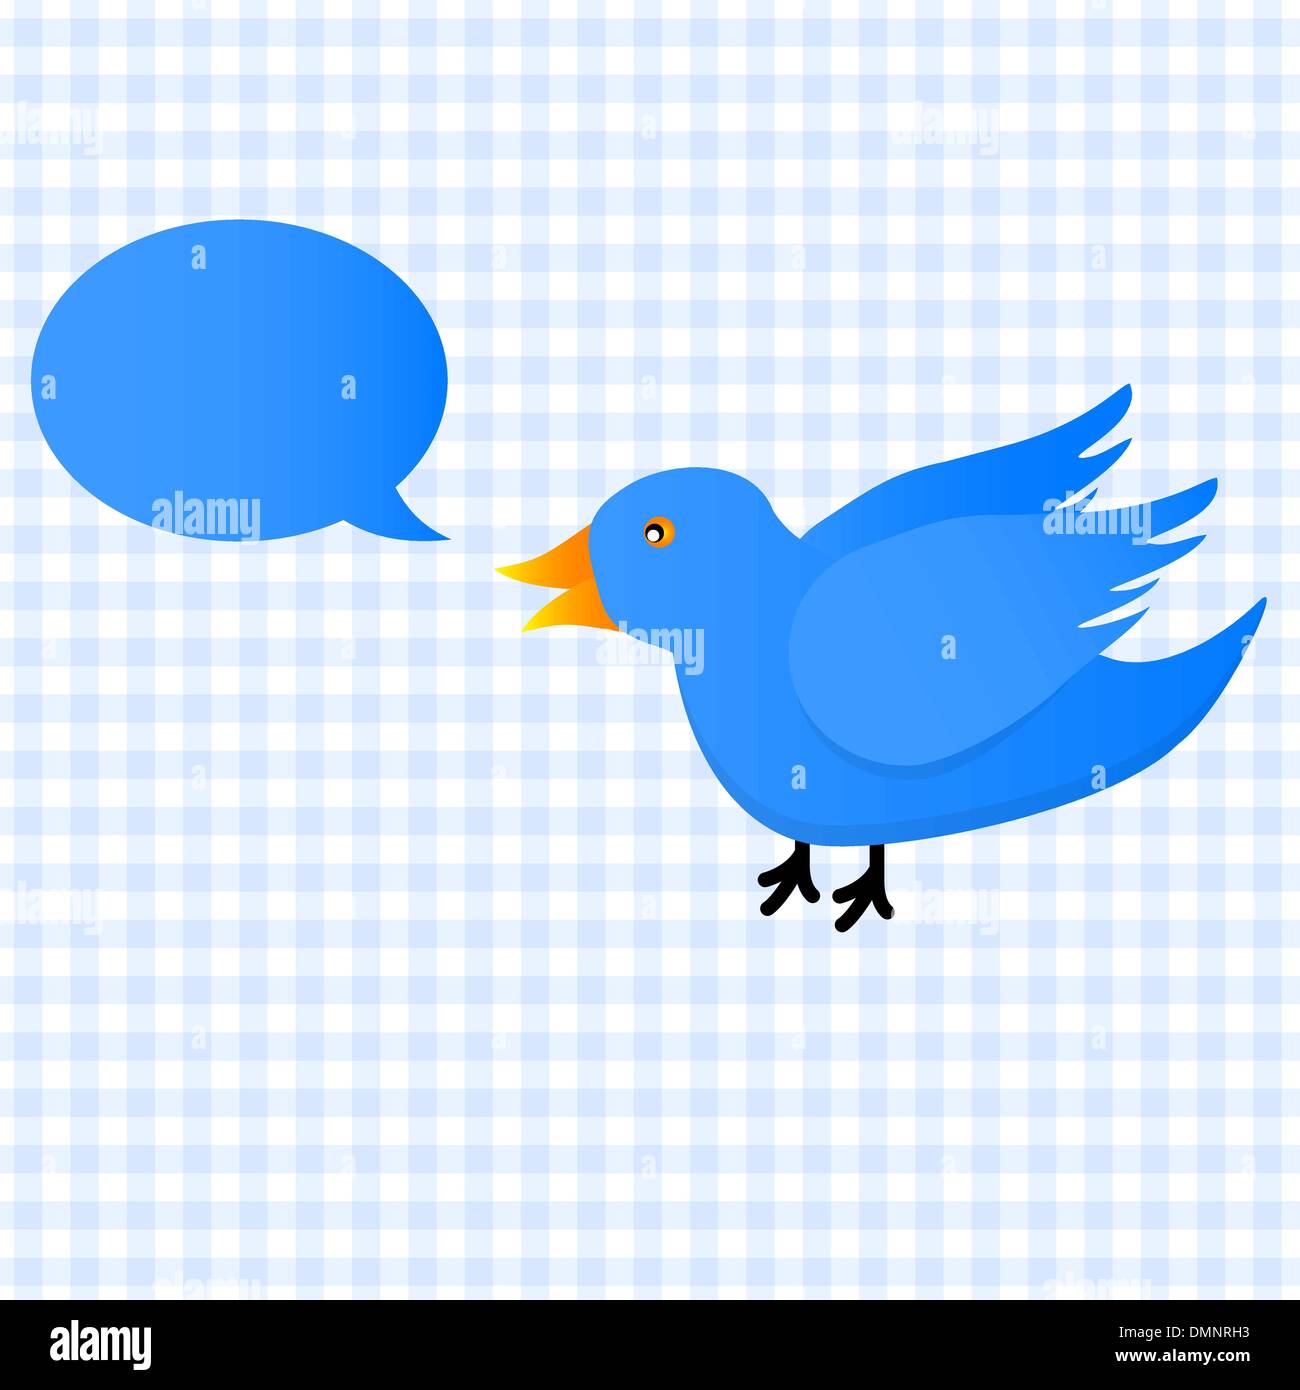 Twitter blue bird icon Stock Vector